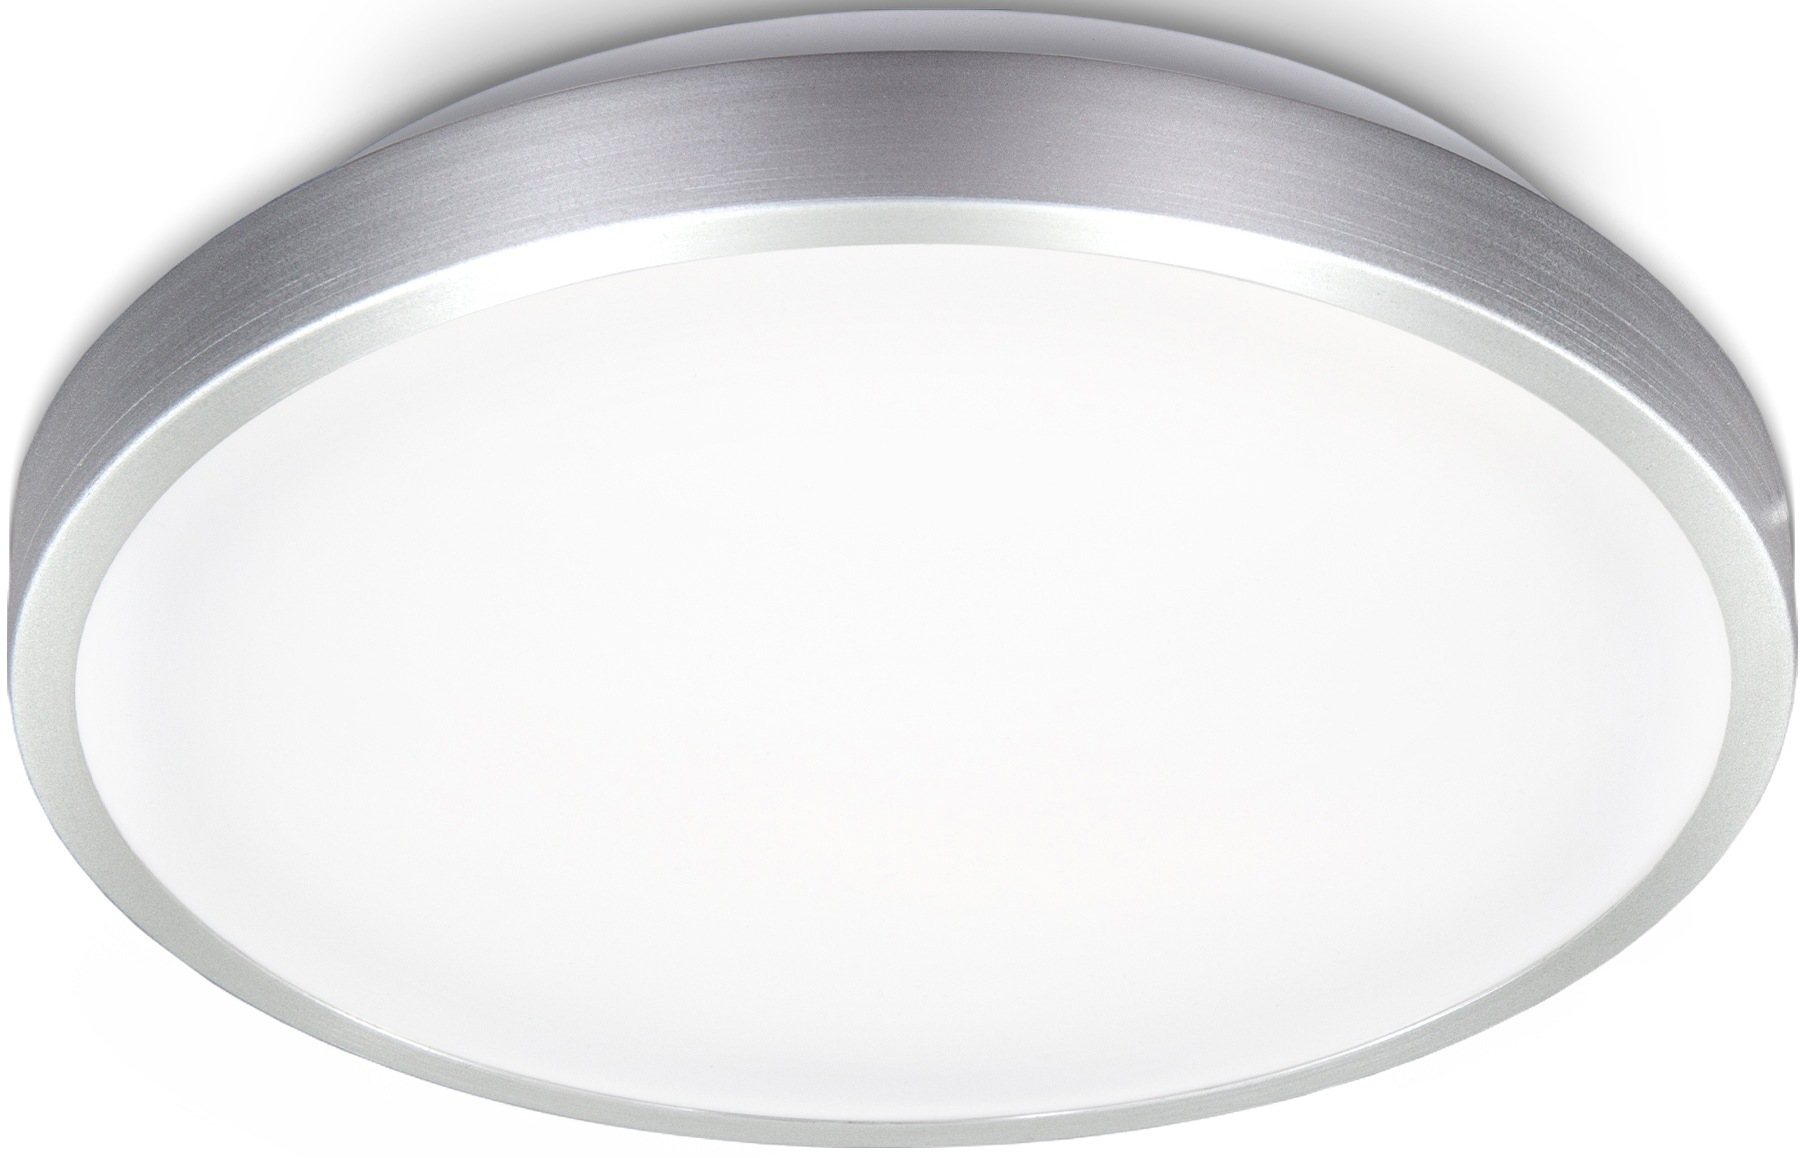 Ovale LED-Deckenleuchte - 4000K - mit Nachtlicht - ohne Schalter